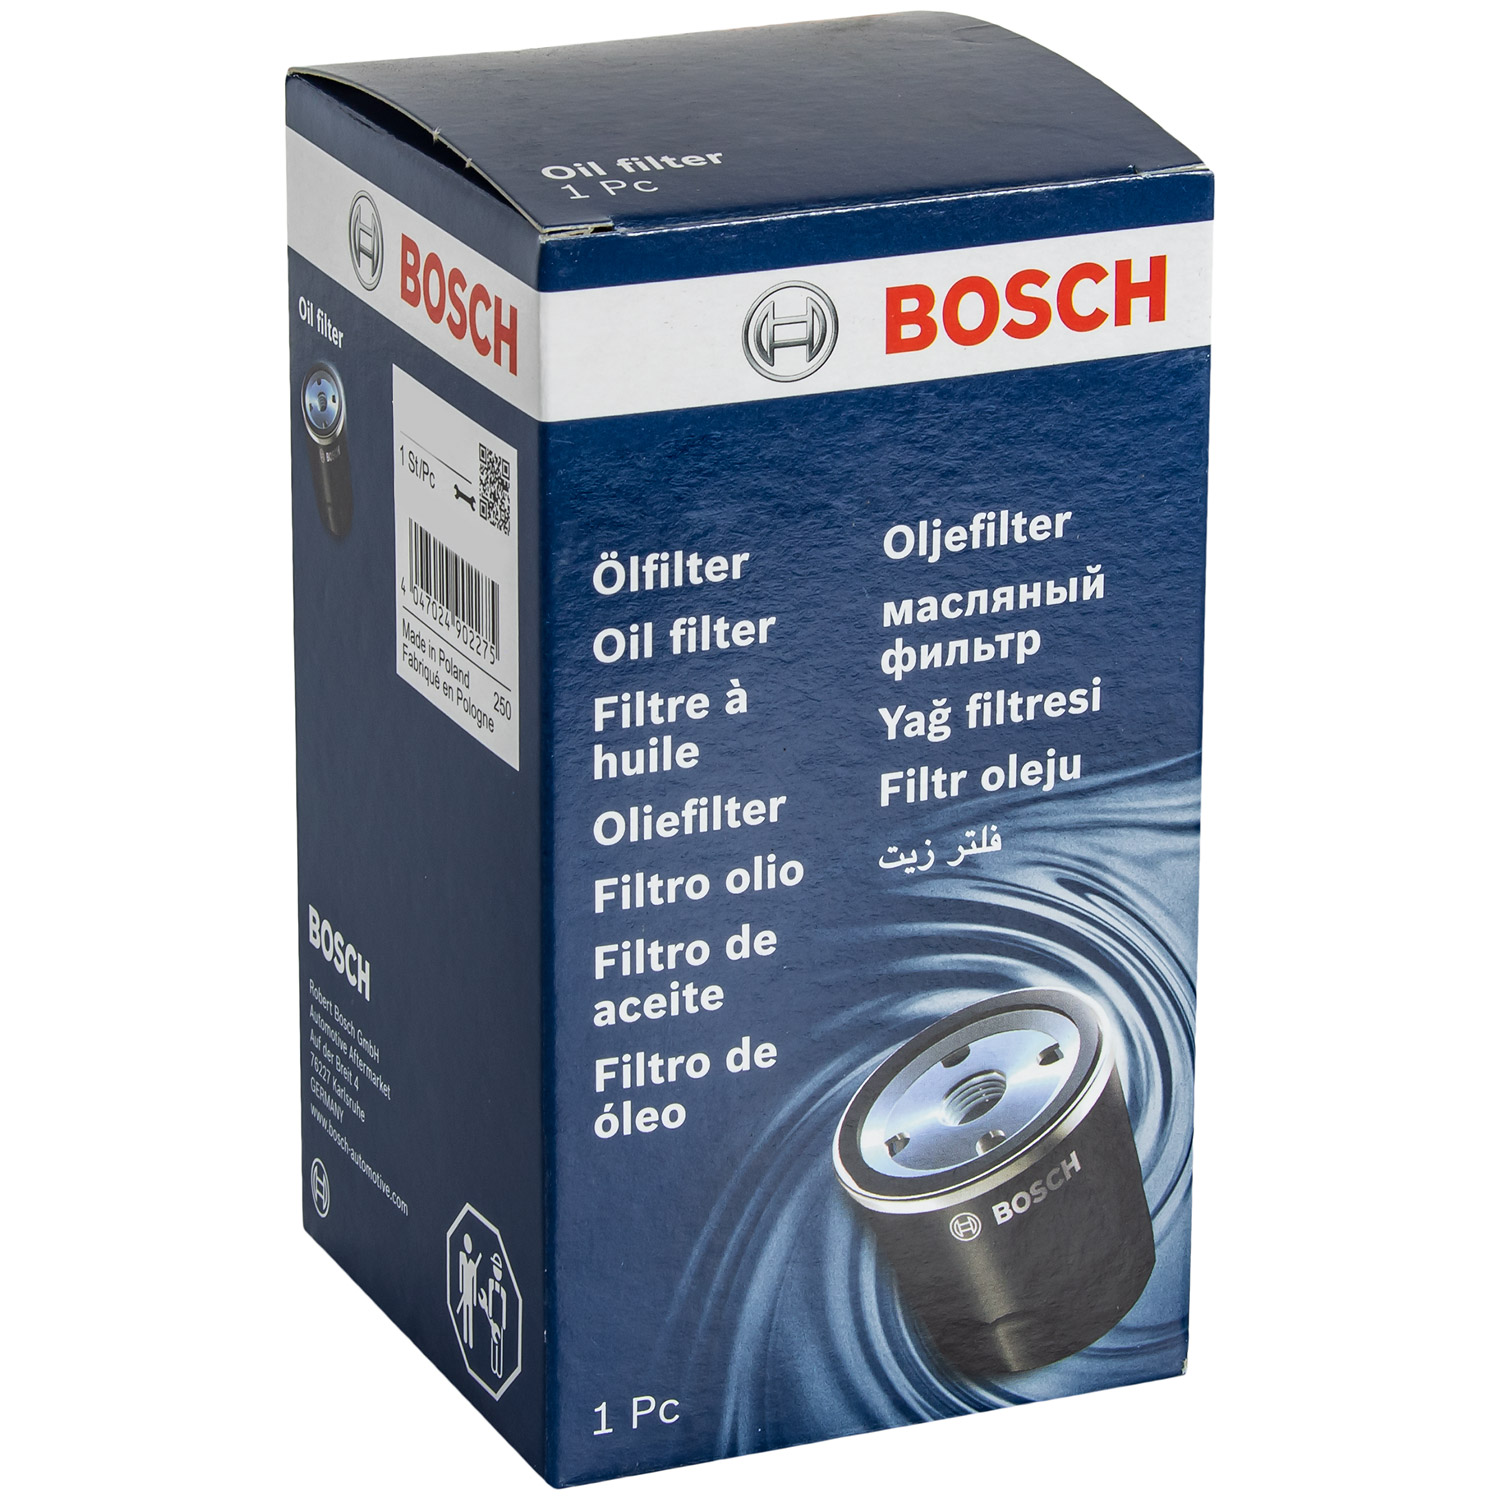 BOSCH Ölfilter Filter für Mercedes-Benz C-Klasse T-Model 1 457 429 261